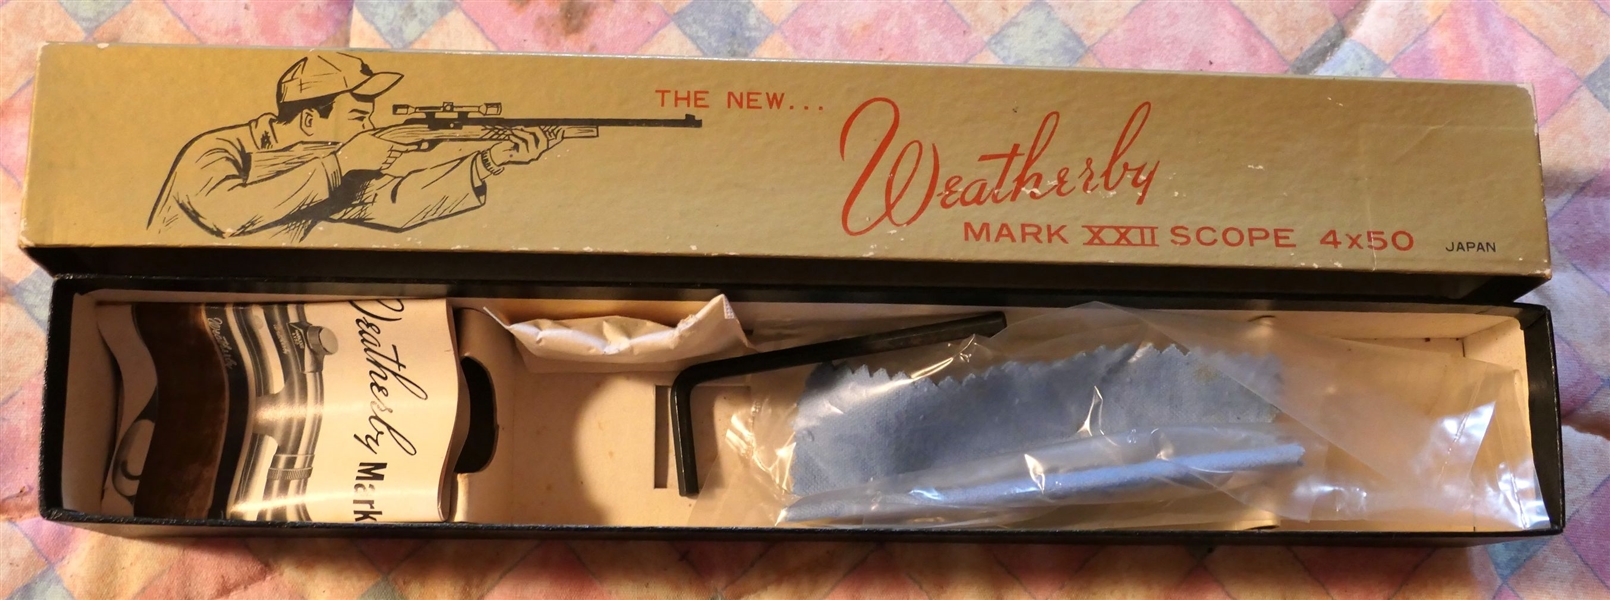 Weatherby Mark XXII Scope Box 